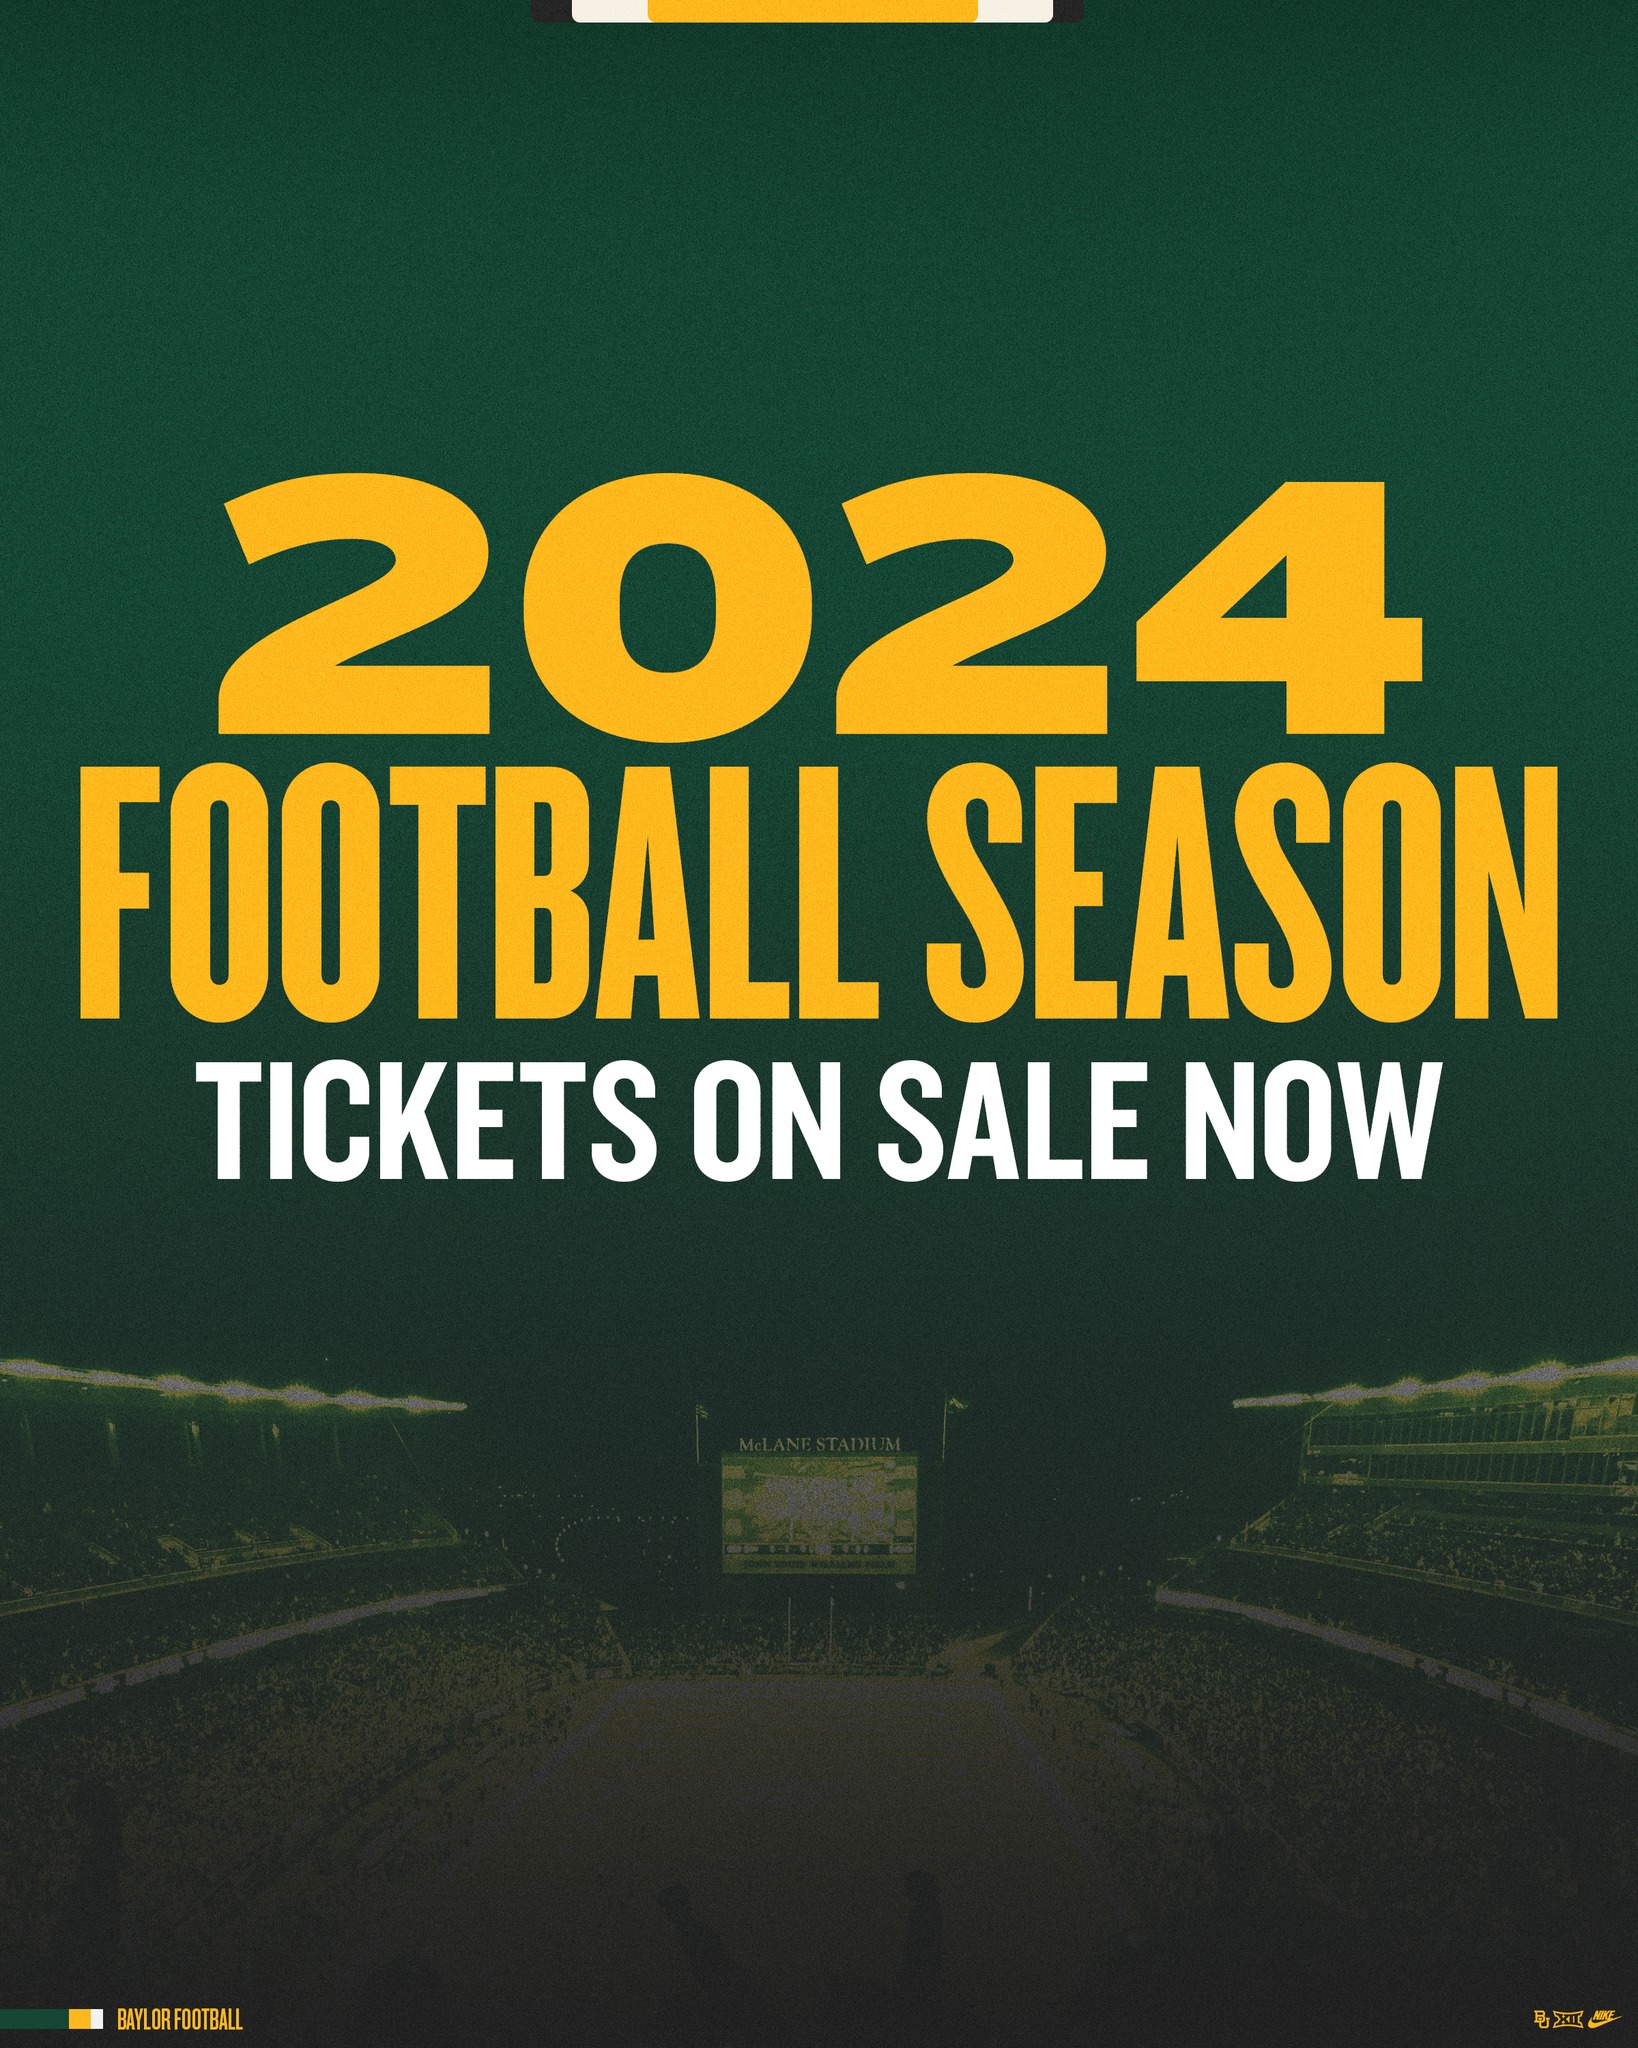 Football Season tickets on Sale Now